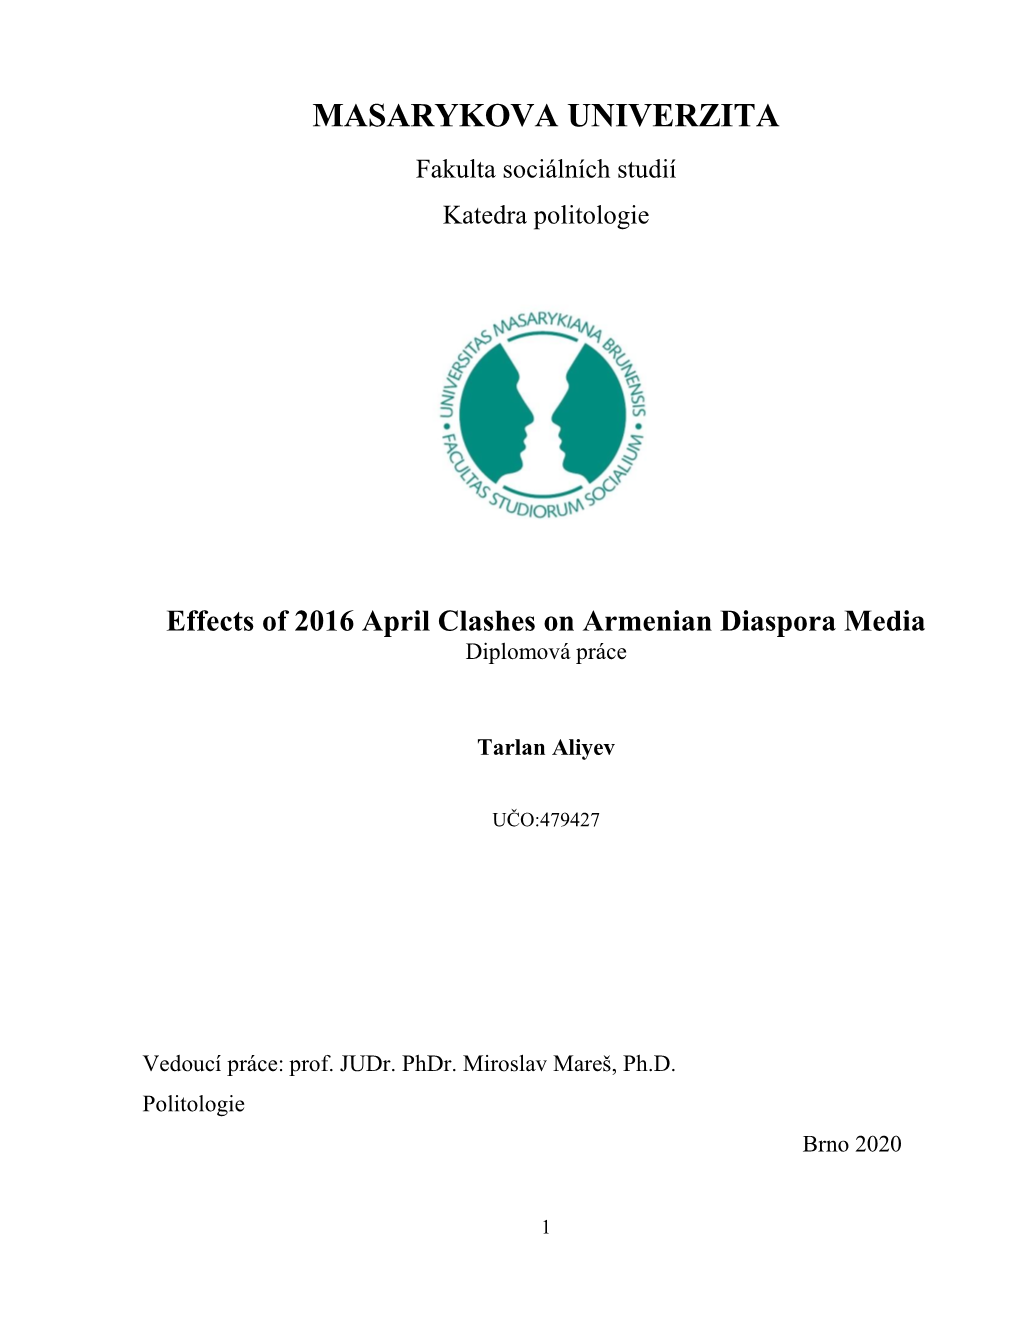 Effects of 2016 April Clashes on Armenian Diaspora Media Diplomová Práce